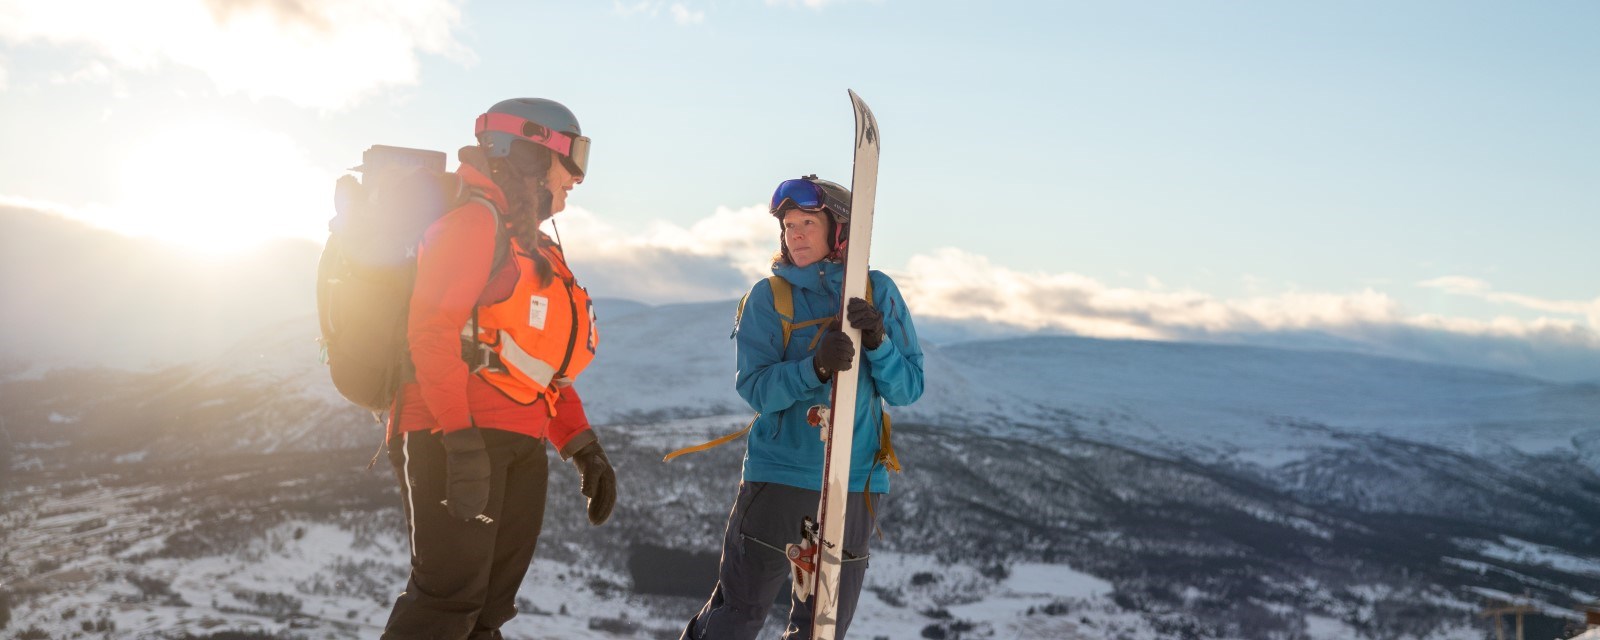 En kvinne fra hjelpekorpset i samtale med kvinnelig turgåer som holder et par fjellski. Snødekt fjell, opphold